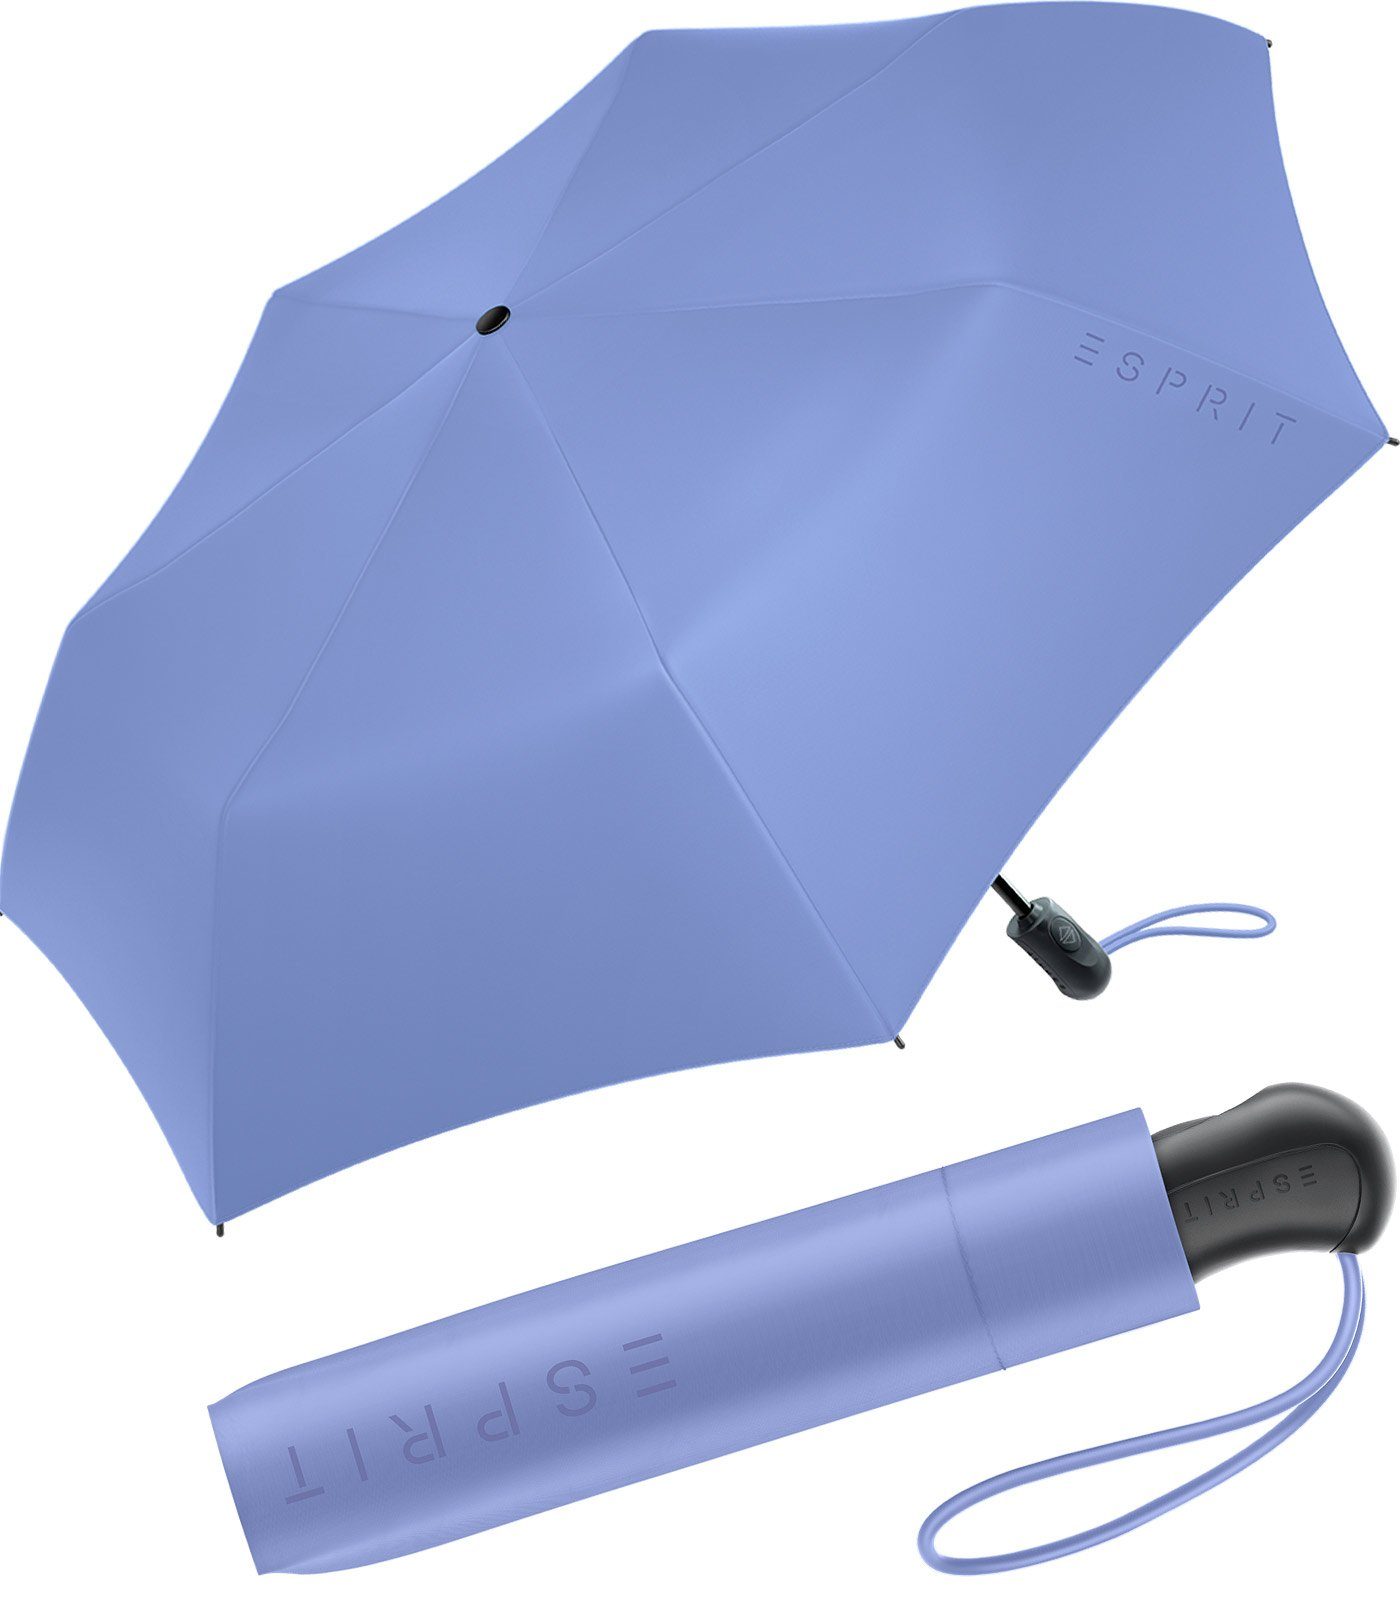 Esprit Taschenregenschirm Damen Easymatic Light Auf-Zu Automatik FJ 2023, stabil und praktisch, in den neuen Trendfarben lila